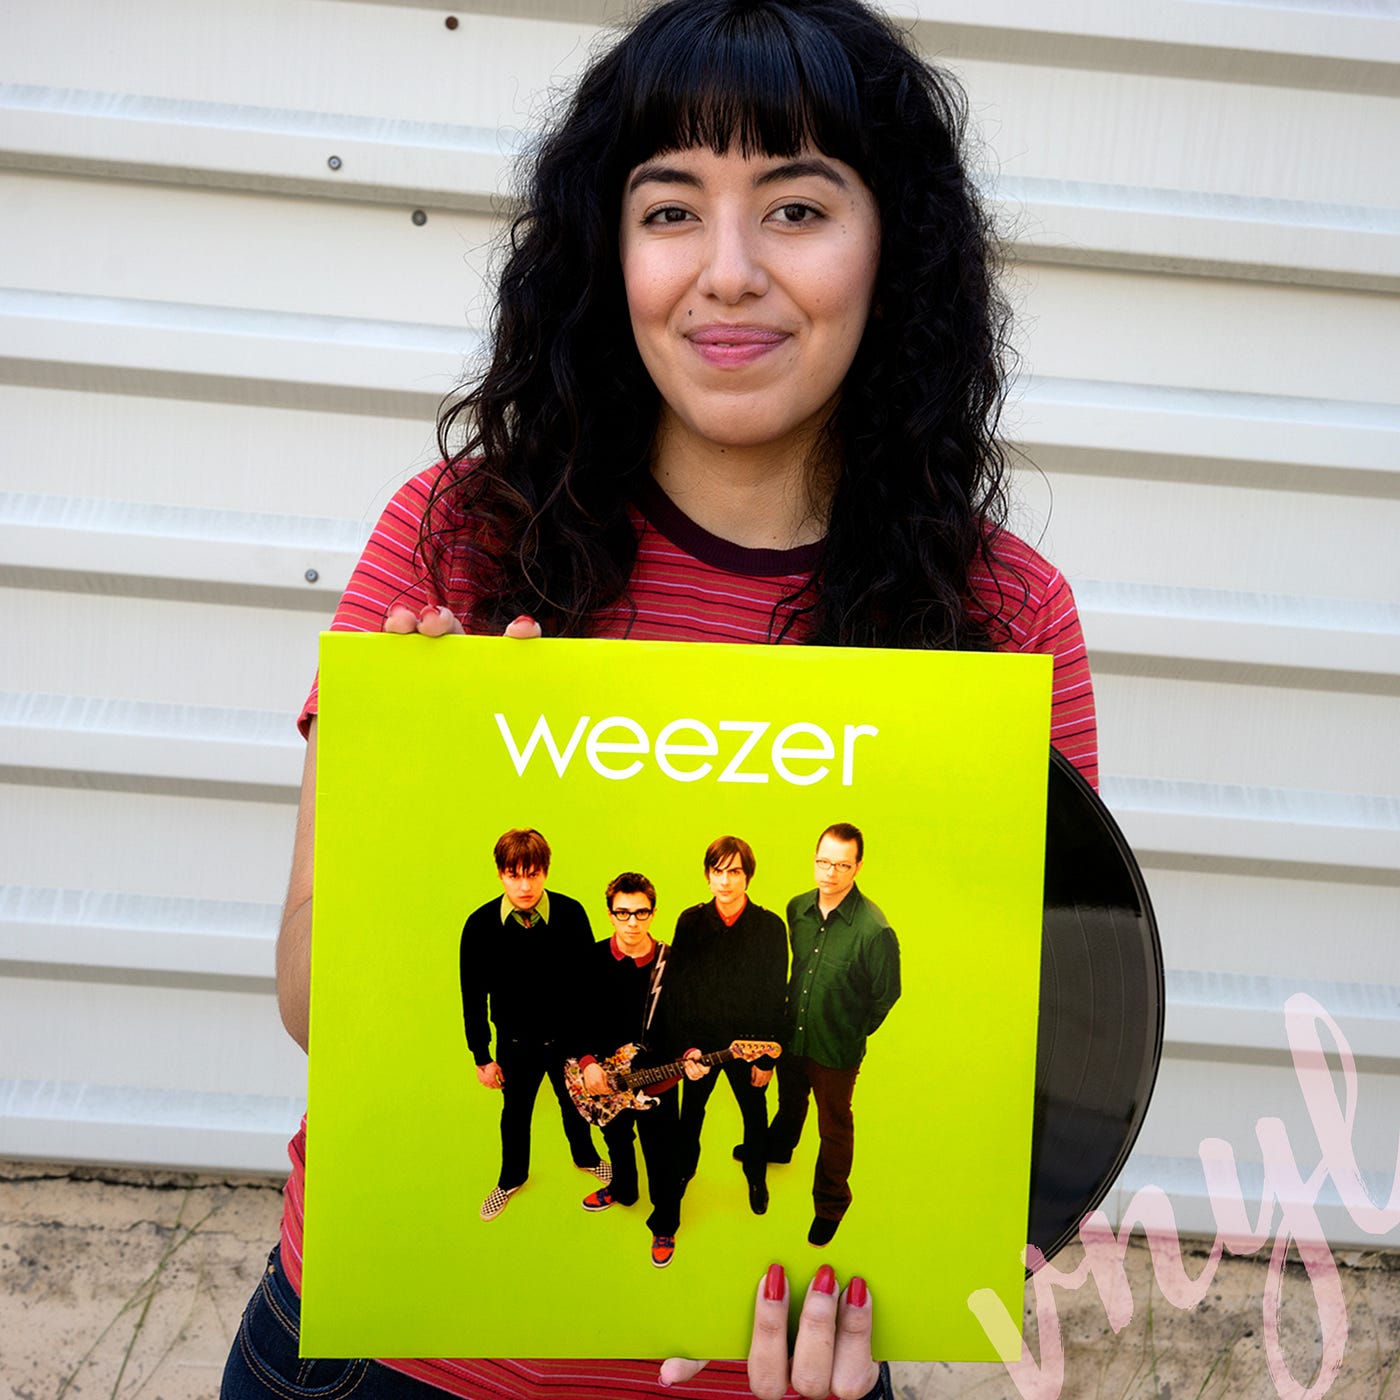 Weezer (Green Album) Vinyl Record